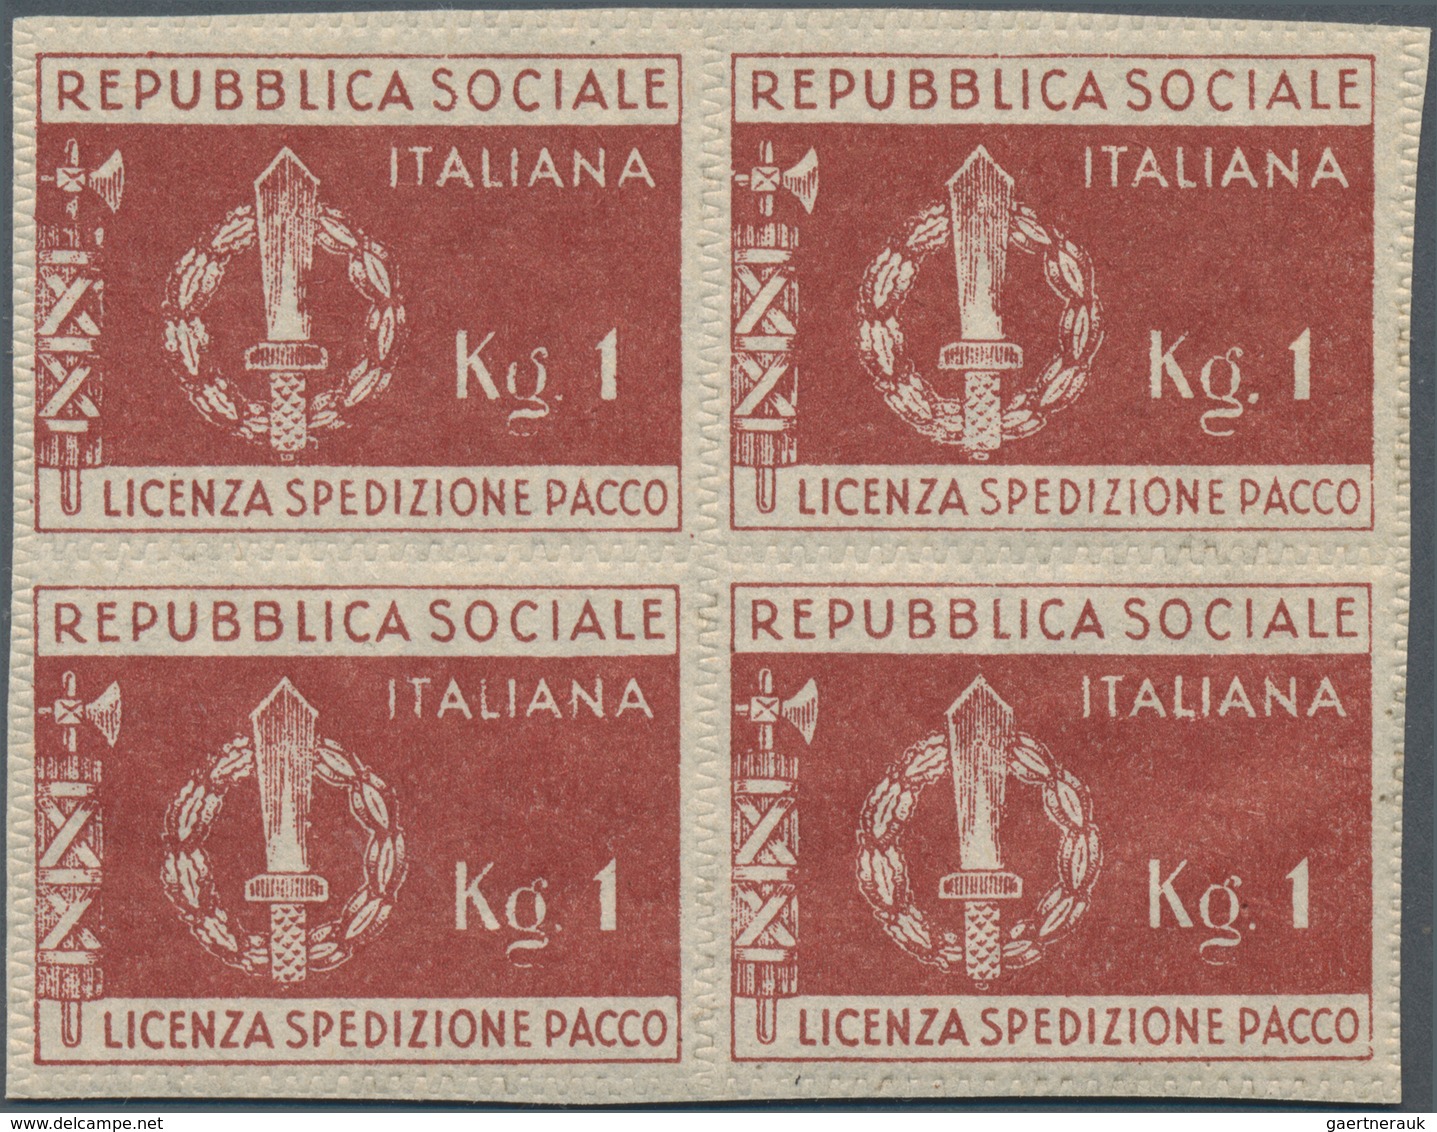 Italien - Portofreiheitsmarken: 1944. RSI - Postage Free Parcel Stamps For Soldiers. 120 Mint Copies - Zonder Portkosten